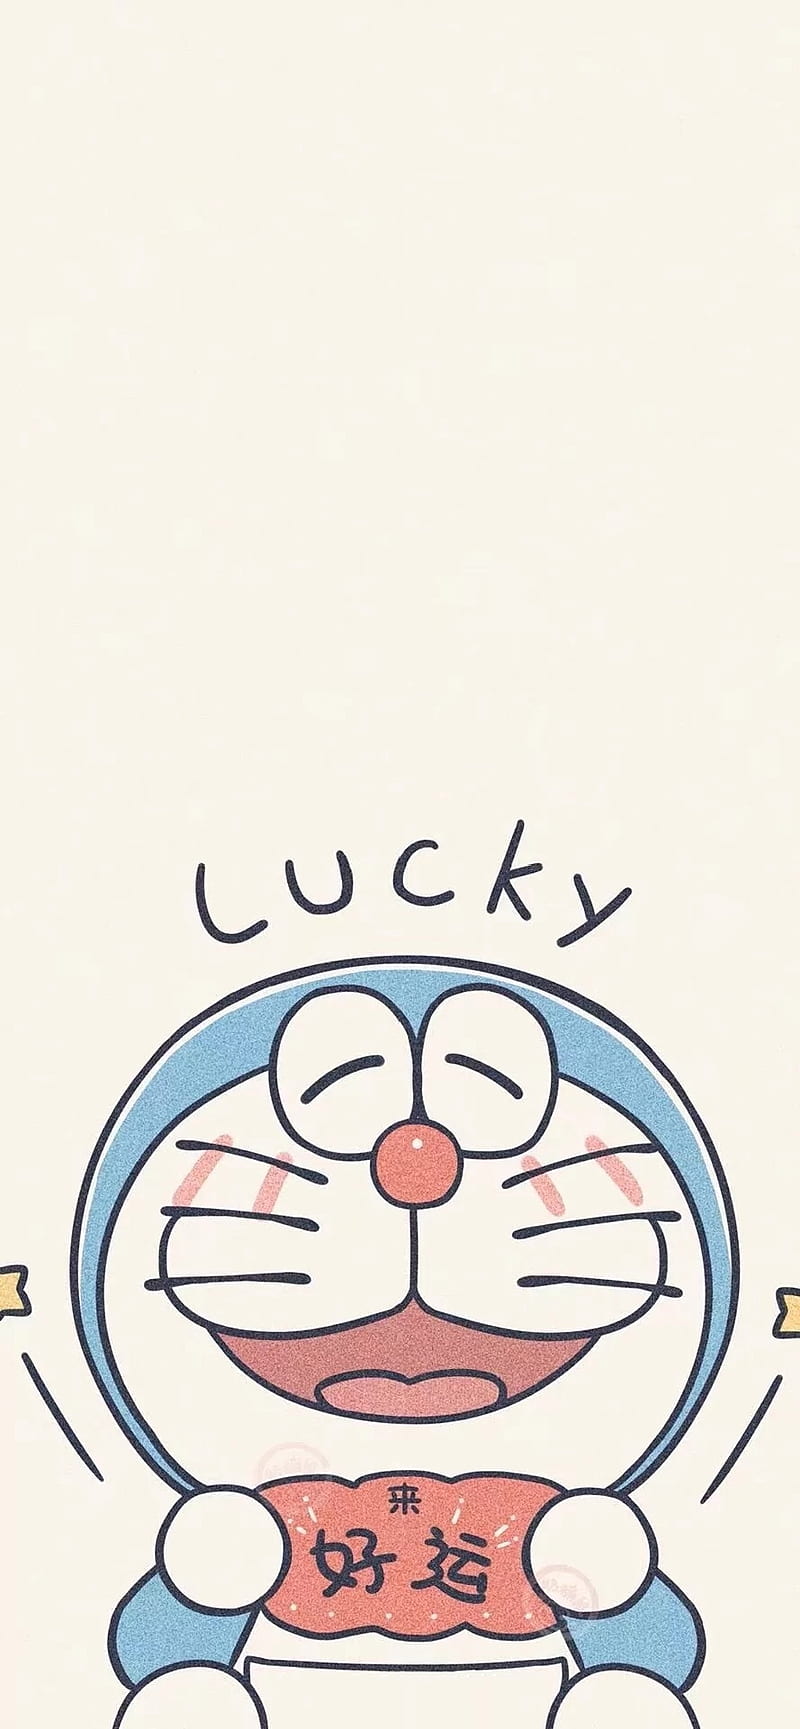 Đừng ngần ngại để tải ngay hình nền HD Doraemon may mắn cho điện thoại của bạn. Với màu xanh chủ đạo và những hình ảnh hoạt hình dễ thương, hình nền này sẽ giúp bạn thêm may mắn và niềm vui cho cuộc sống hàng ngày của mình.